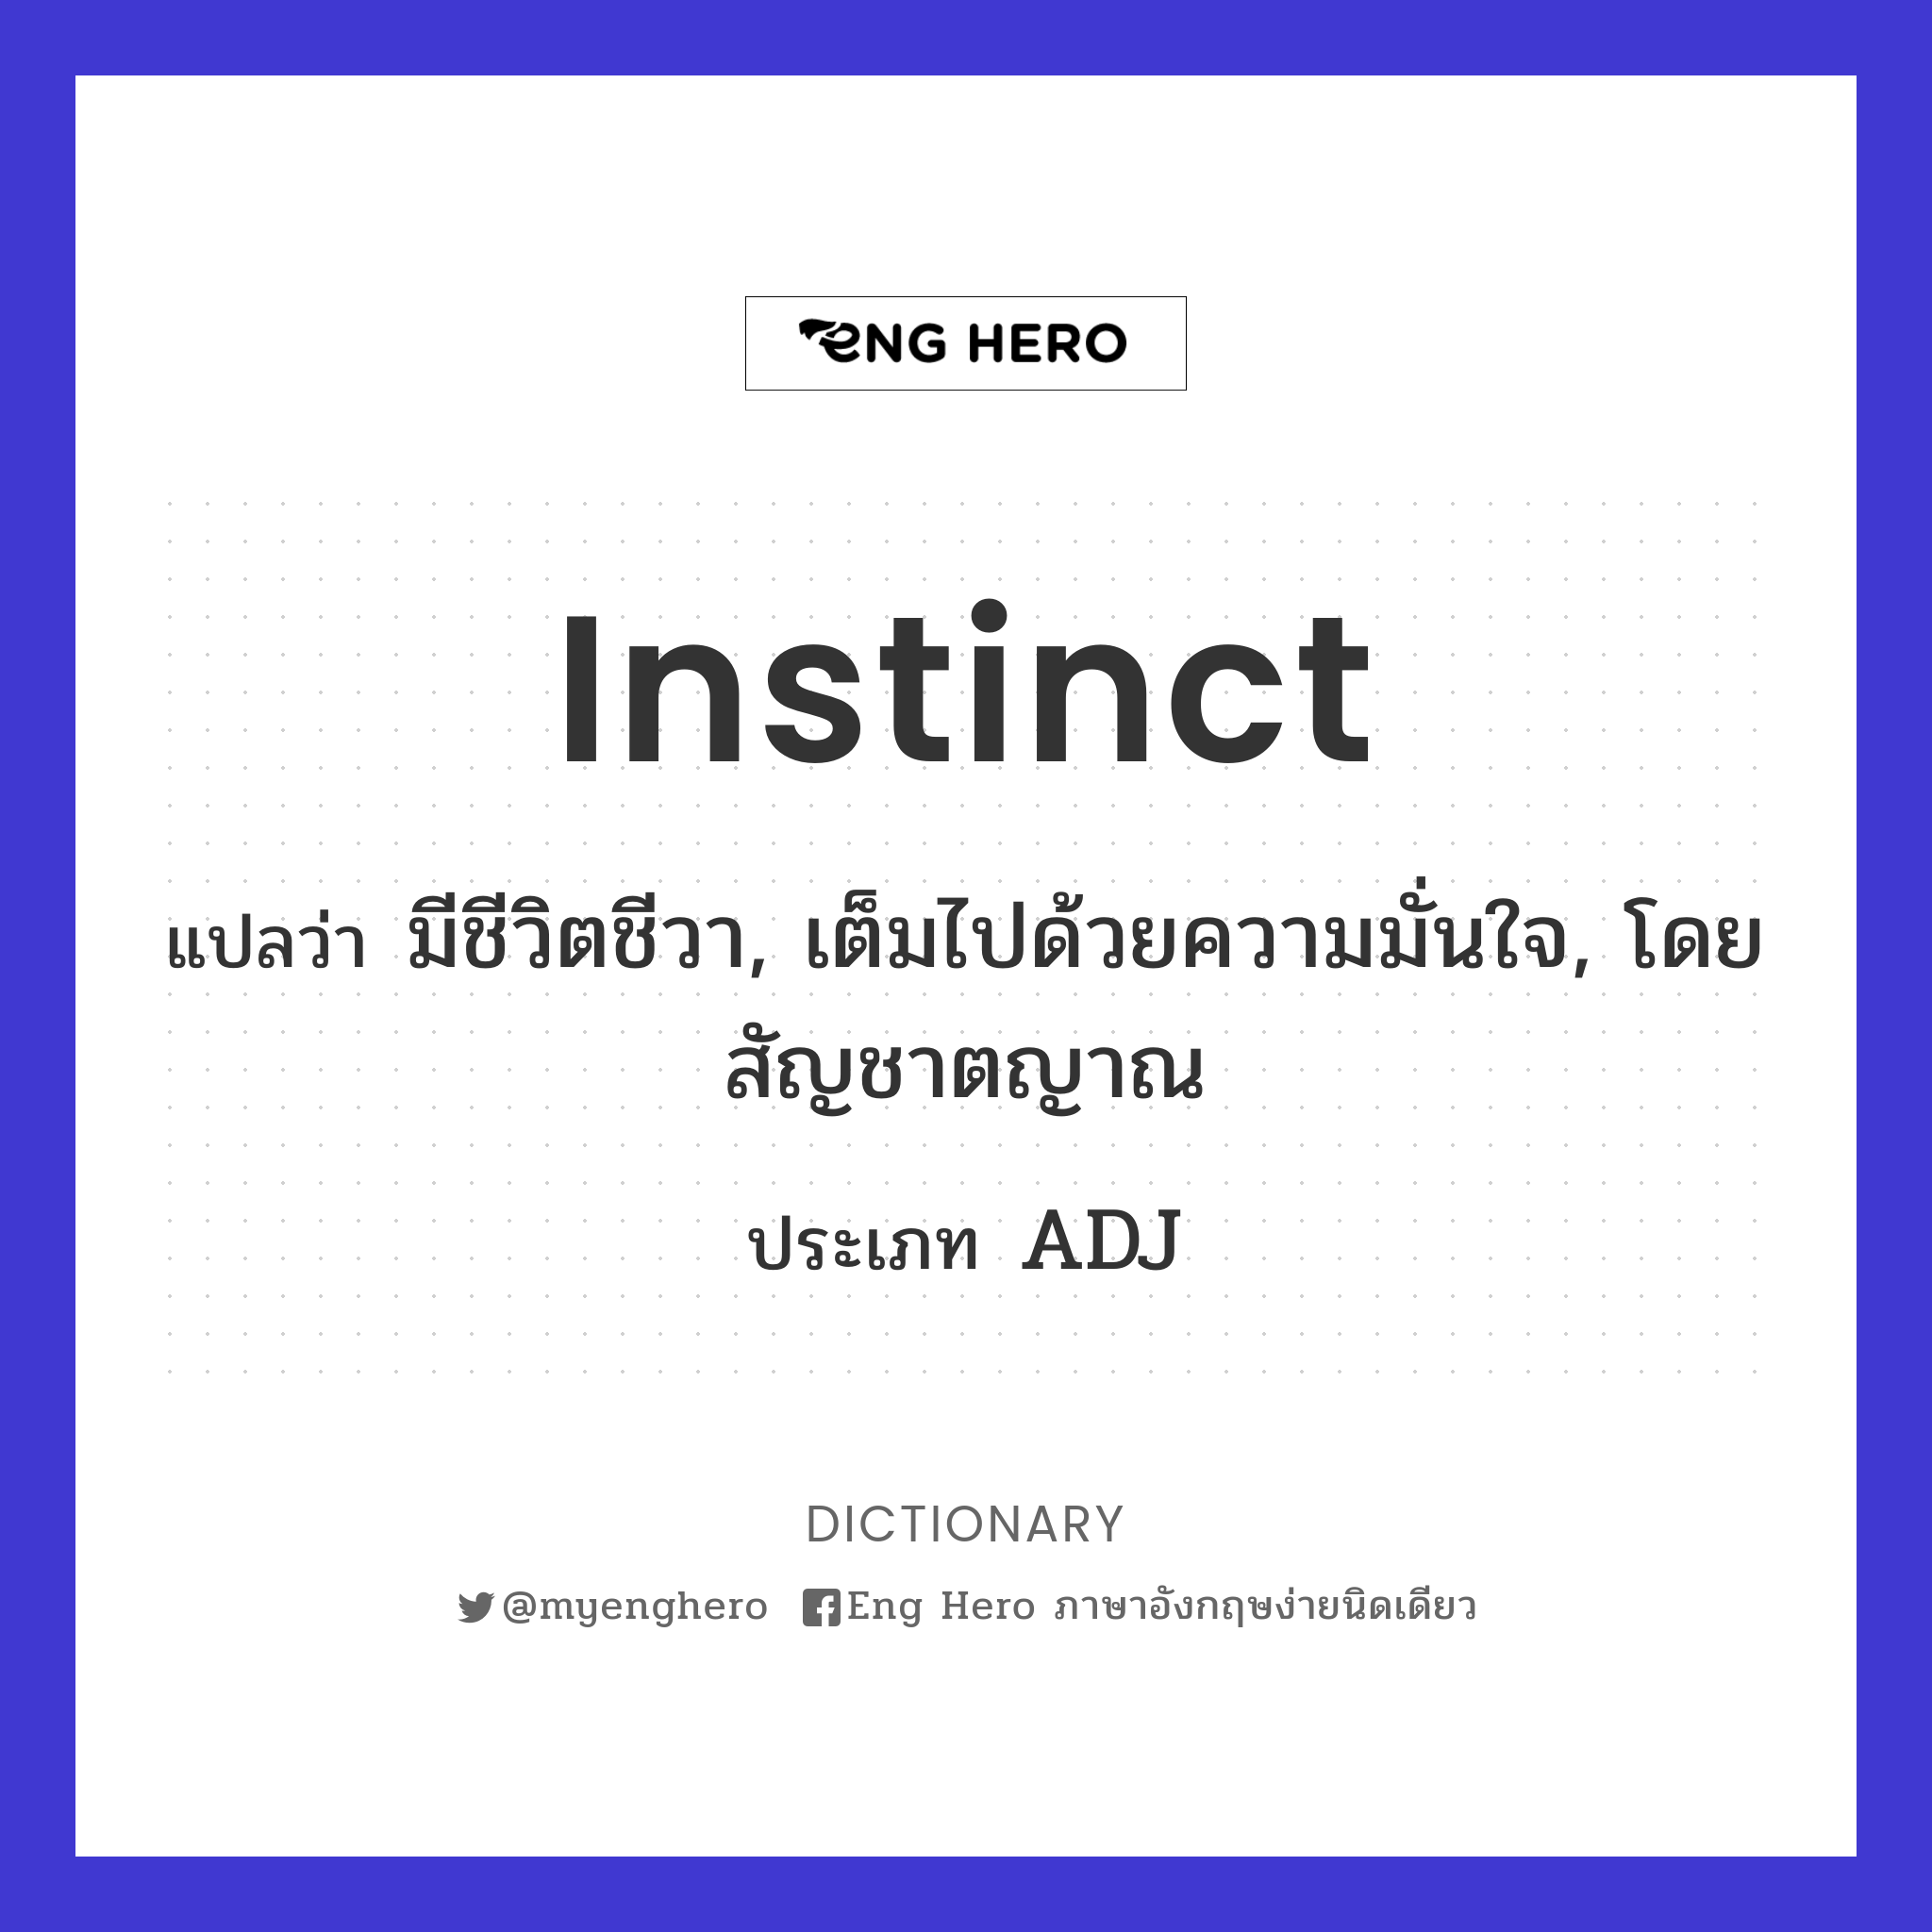 instinct